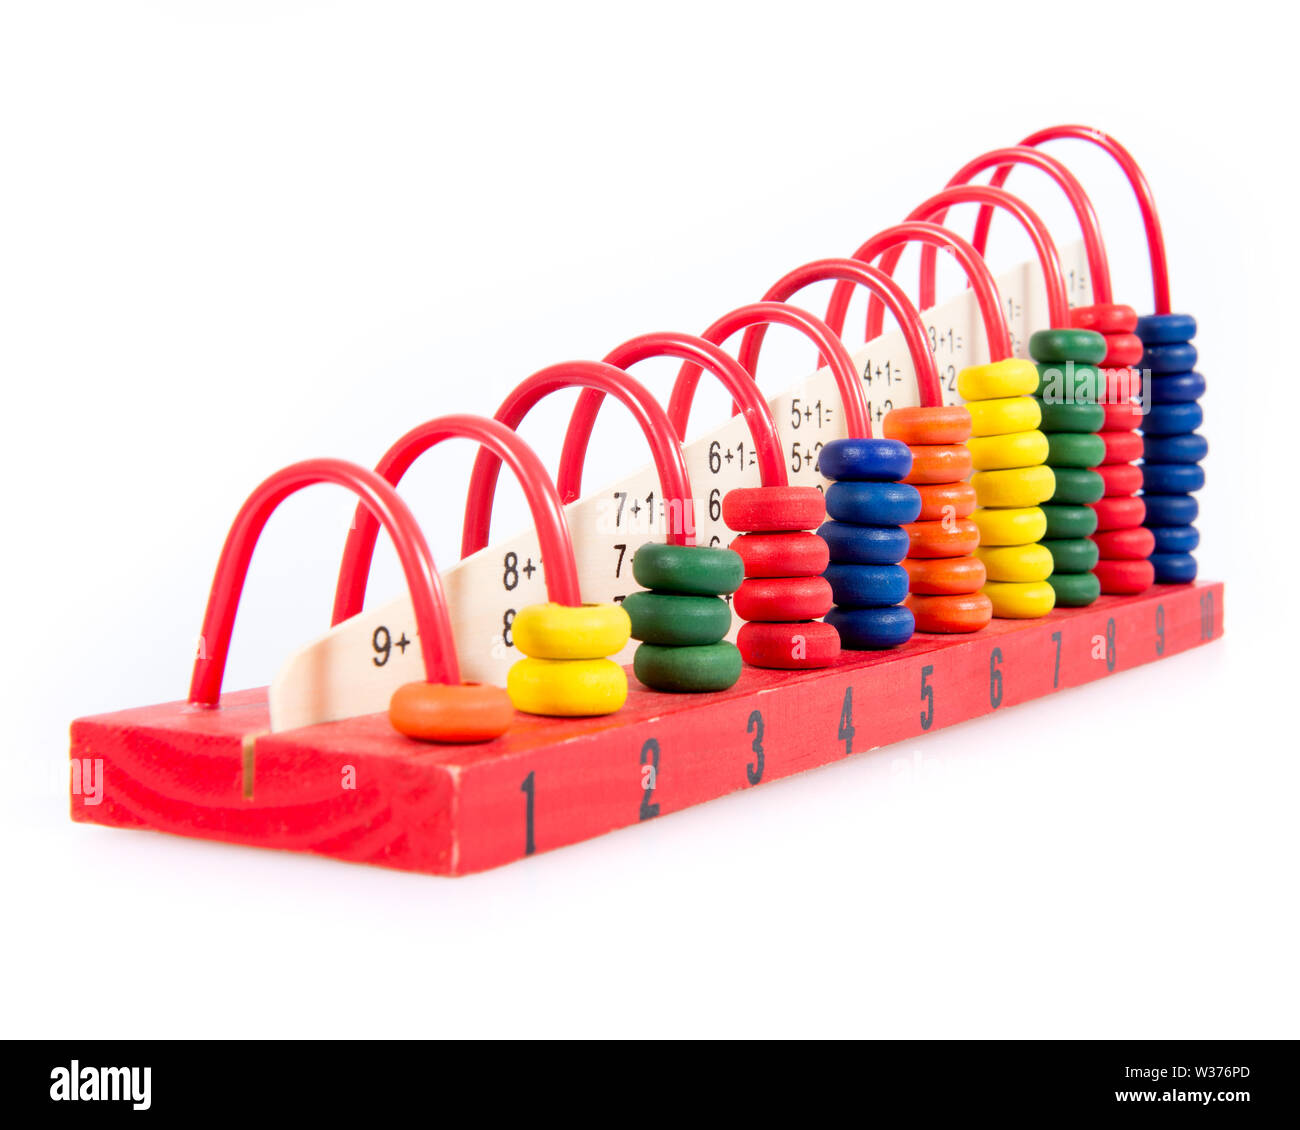 Colorata, giocattolo di legno, abacus con conteggio di numeri da 1 a 10. Foto Stock